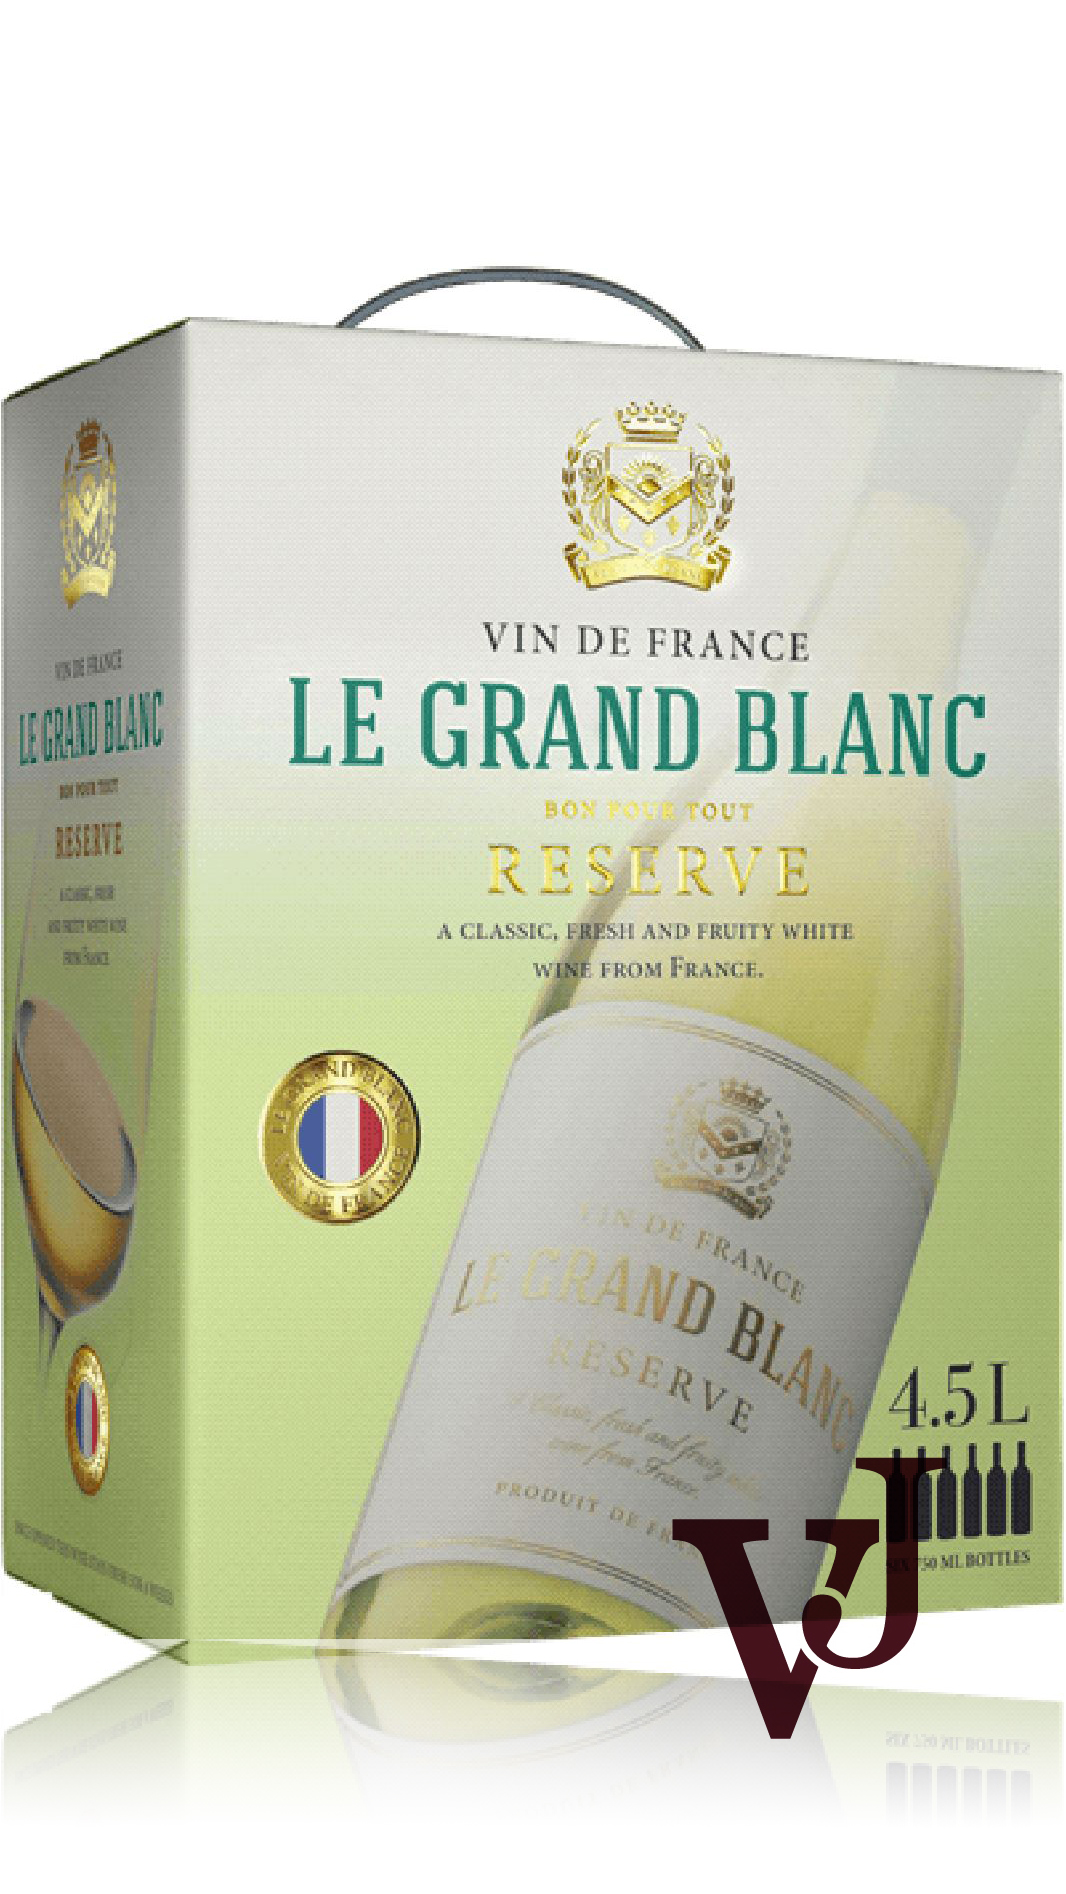 Vitt Vin - Le Grand Blanc artikel nummer 702651 från producenten Iconic Wines från området Frankrike.